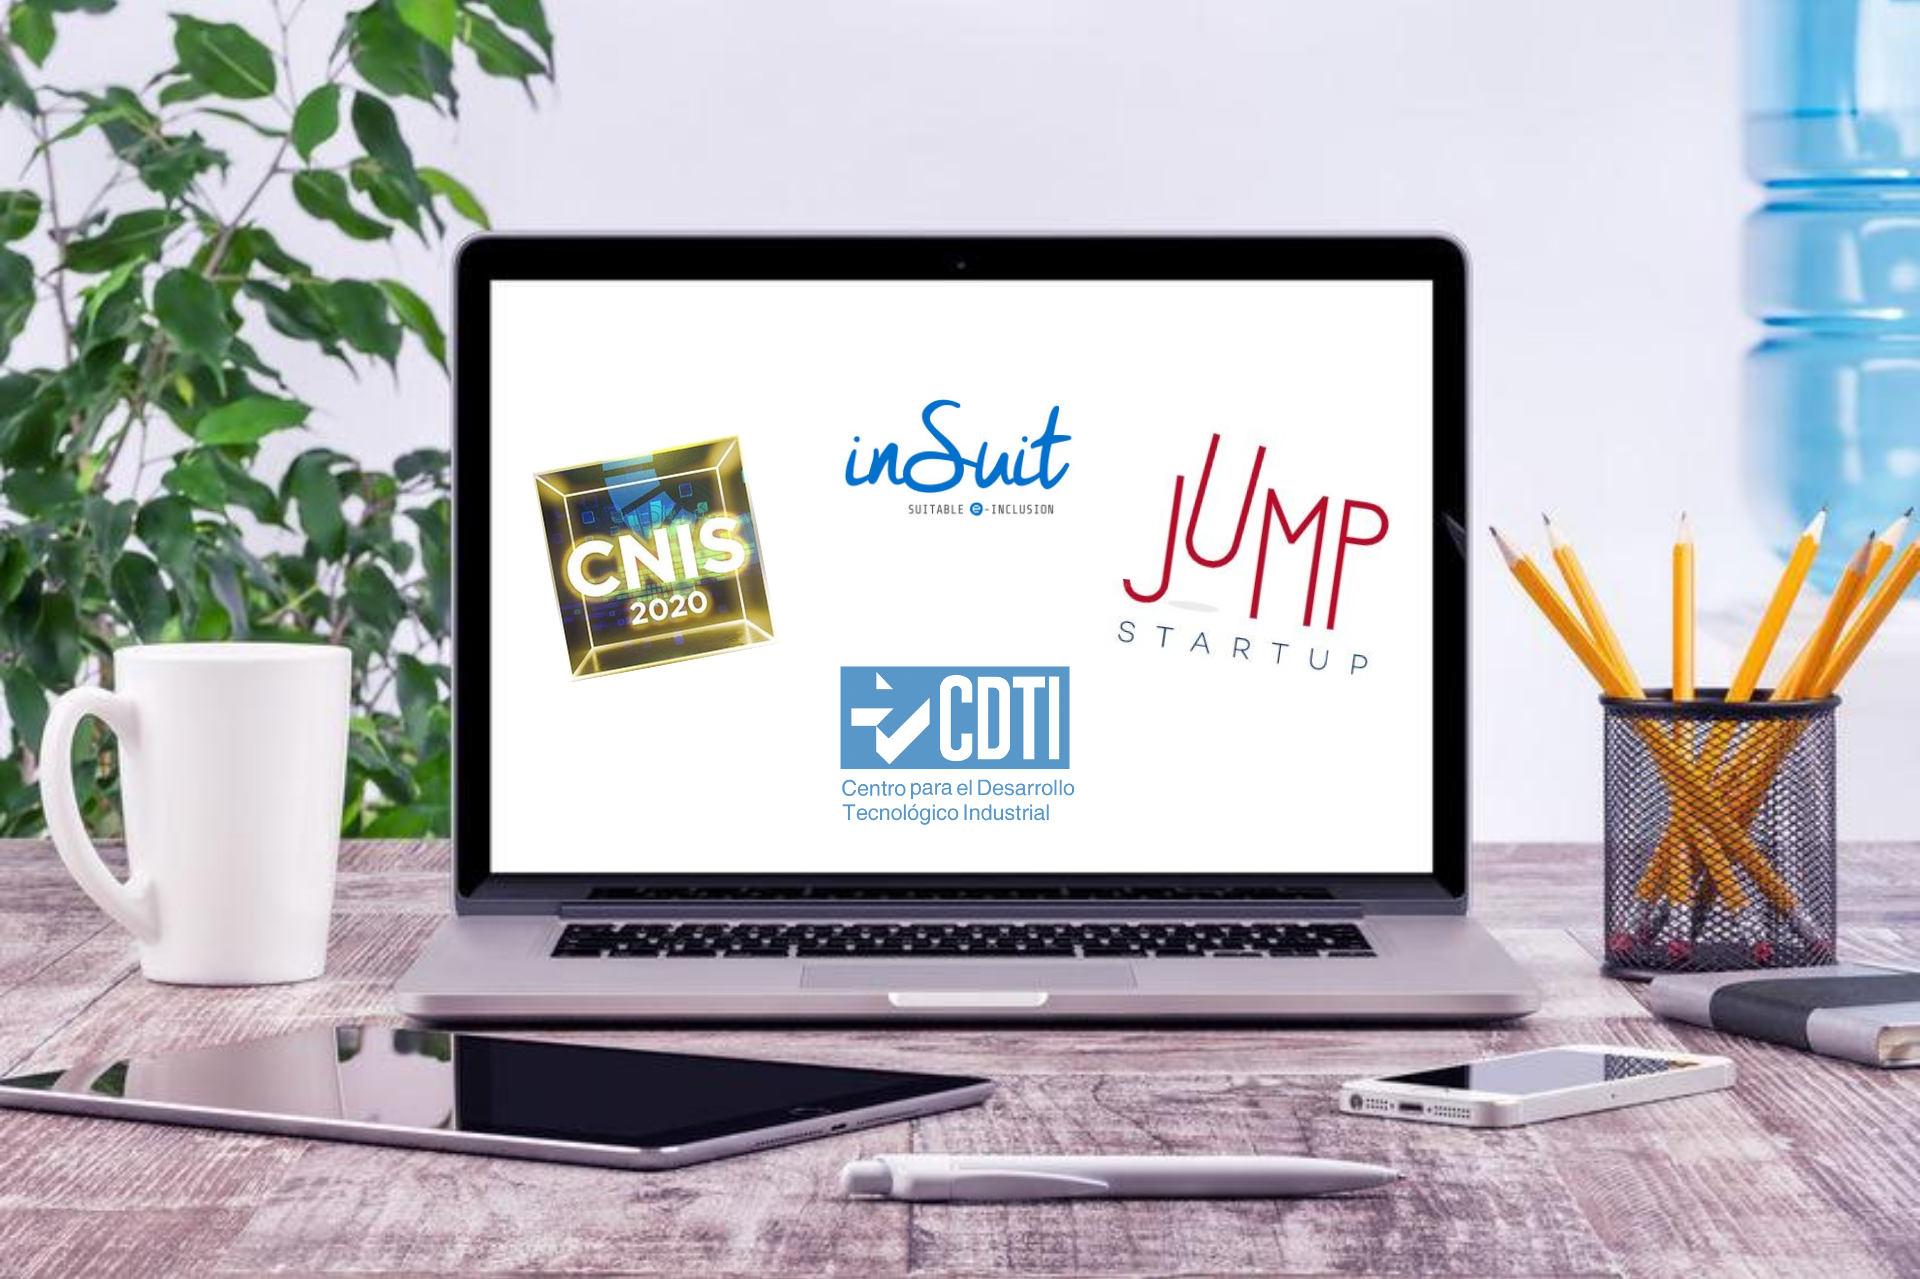 ordenador portátil muestra en su pantalla los logos de insuit, cnis, jump startup y cdti centro para el desarrollo tecnológico industrial